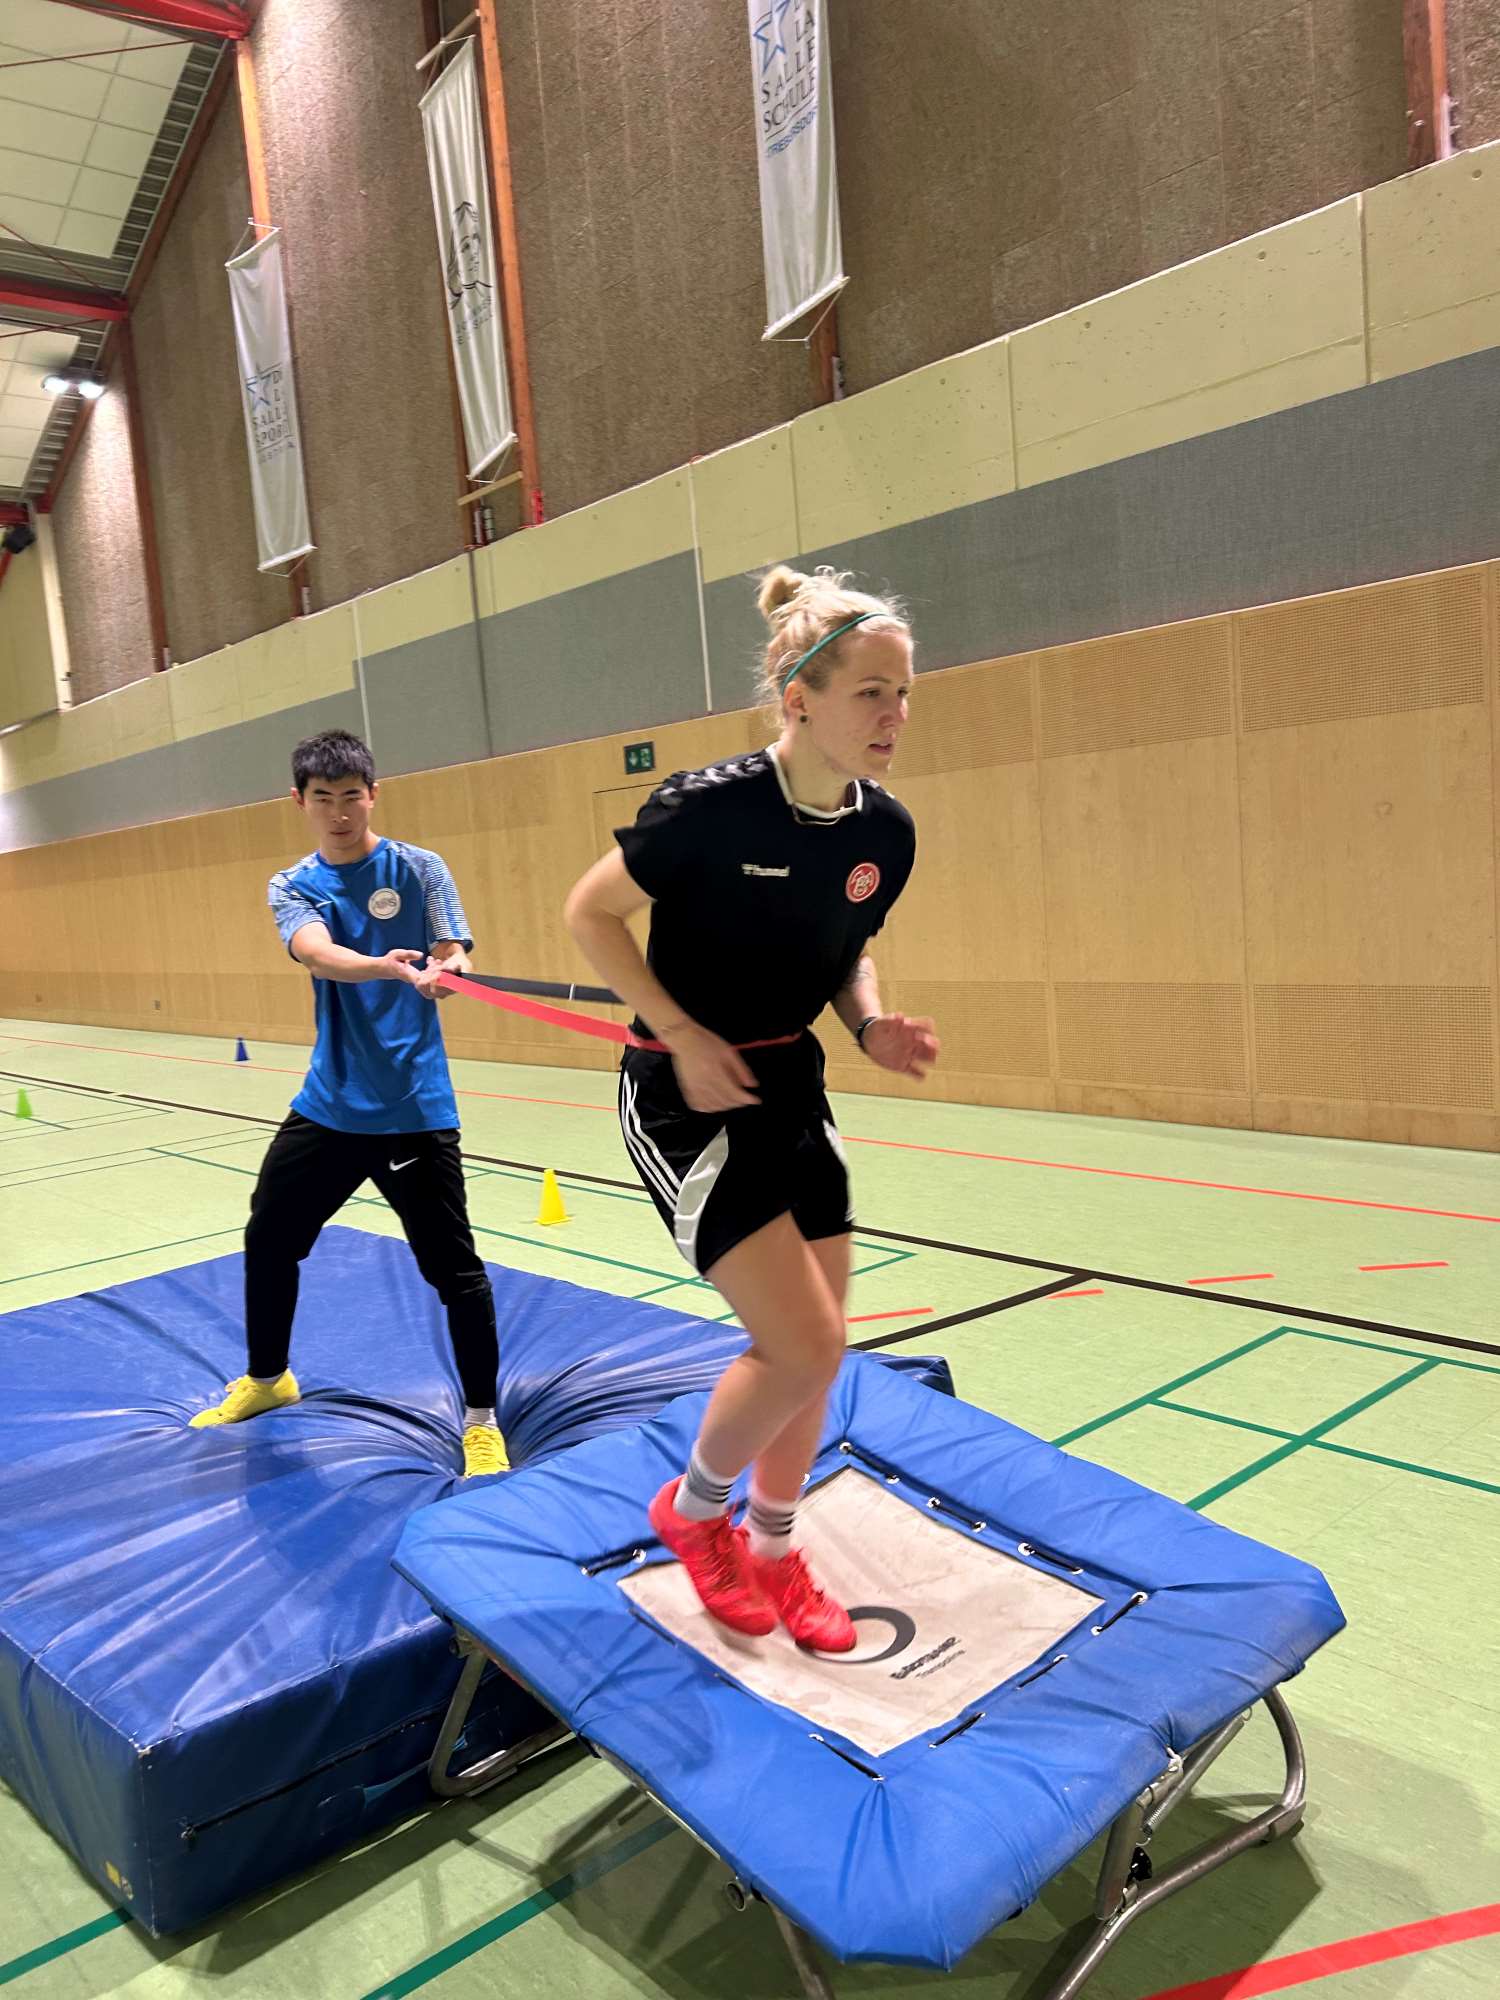 AFS Individualtraining - Sportübungen in der Halle - Training am Trampolin